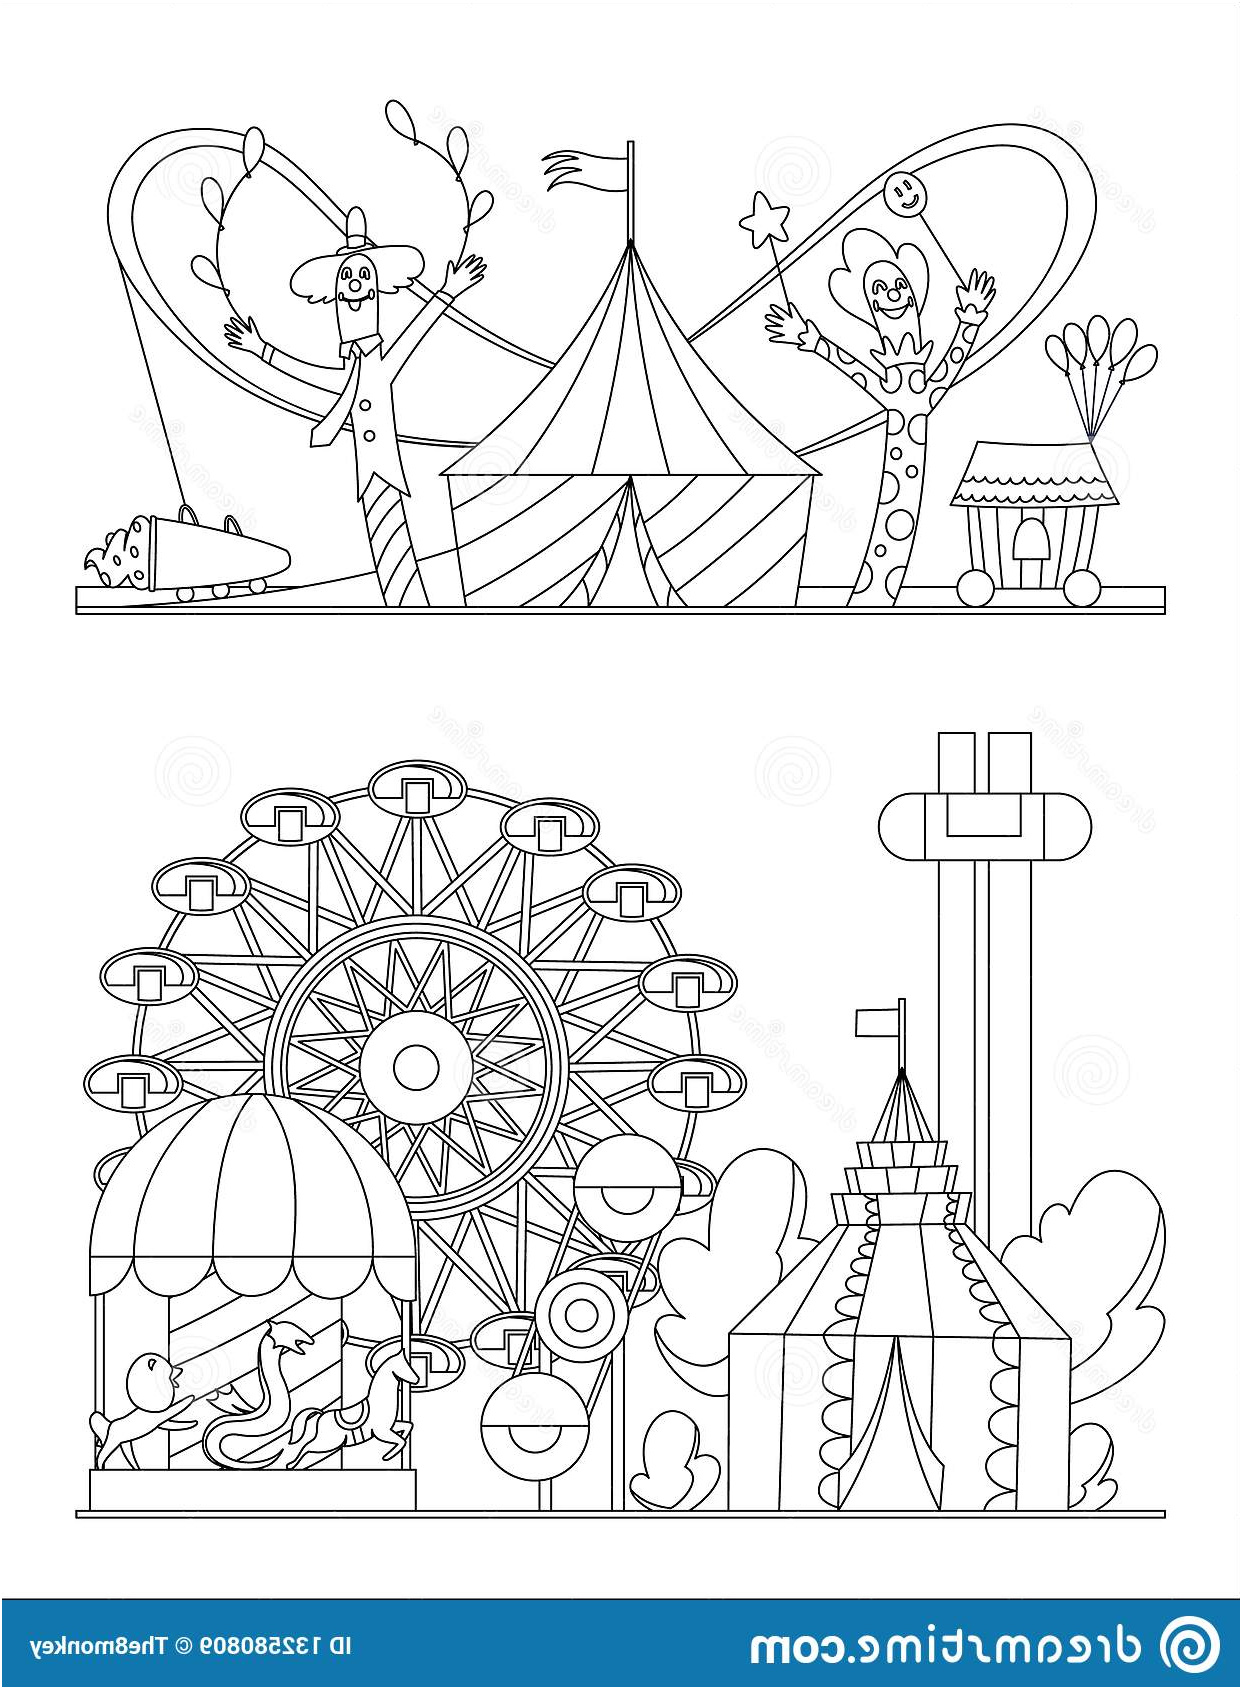 parc d attractions paysage urbain des carrousels montagnes russes page livre coloriage ballon à air cirque foire image